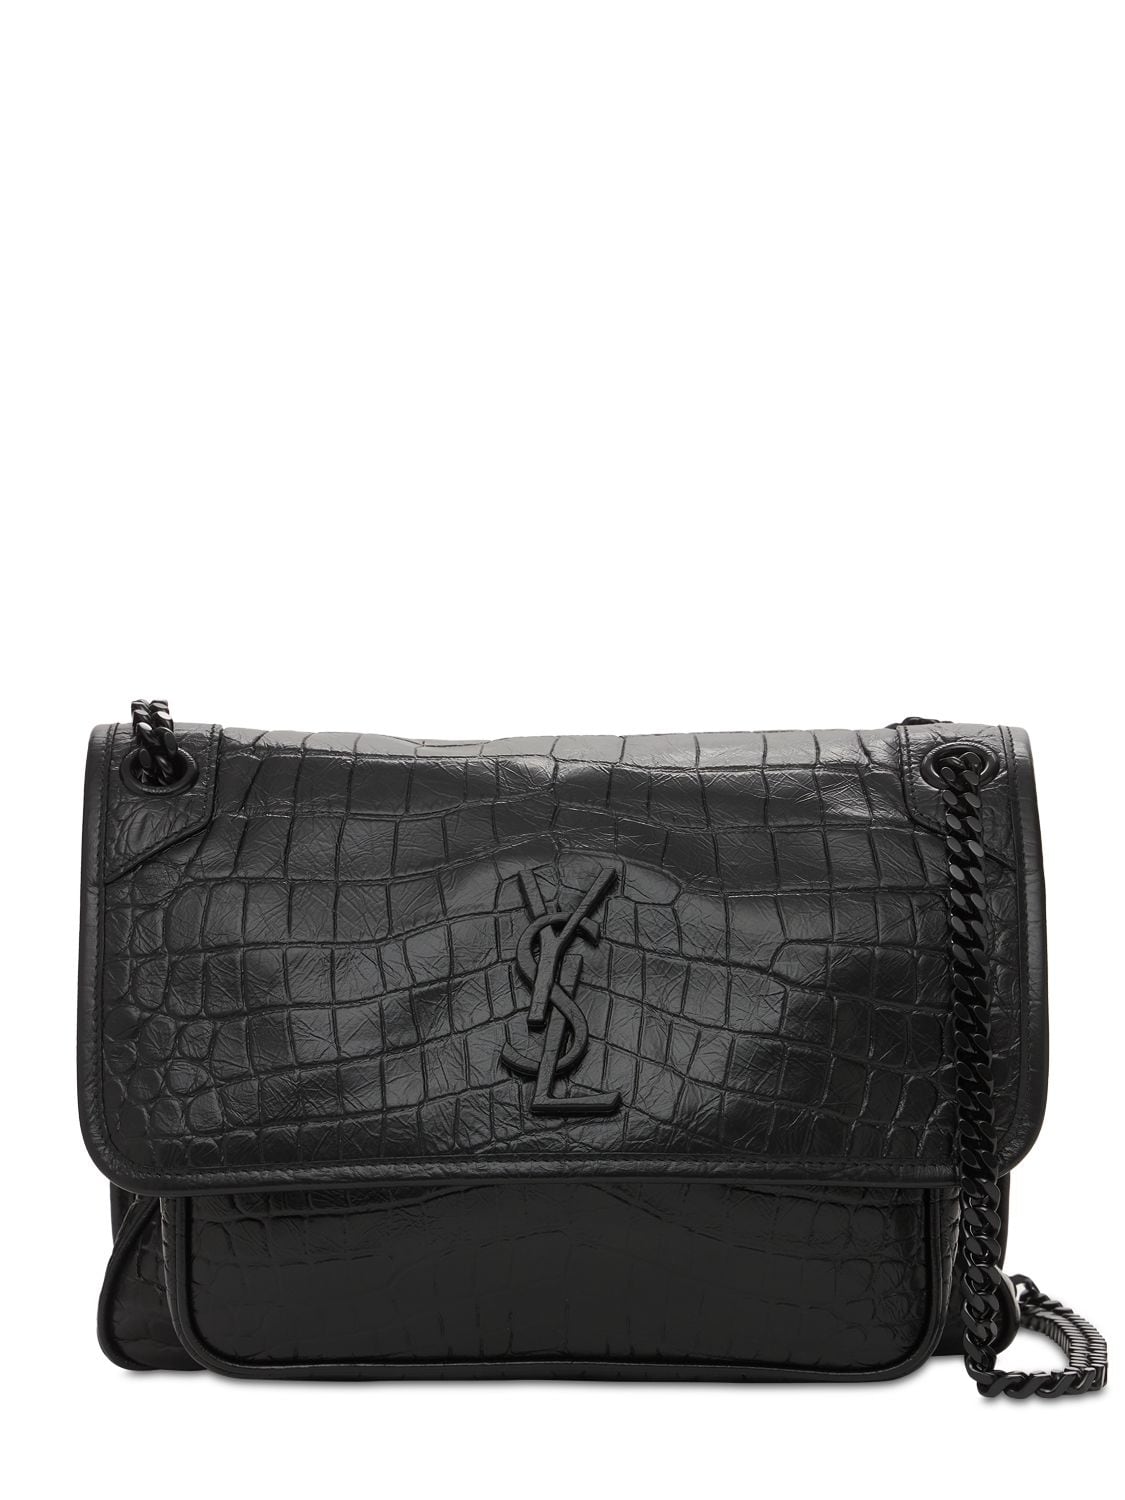 Image of Medium Niki Croc Embossed Leather Bag